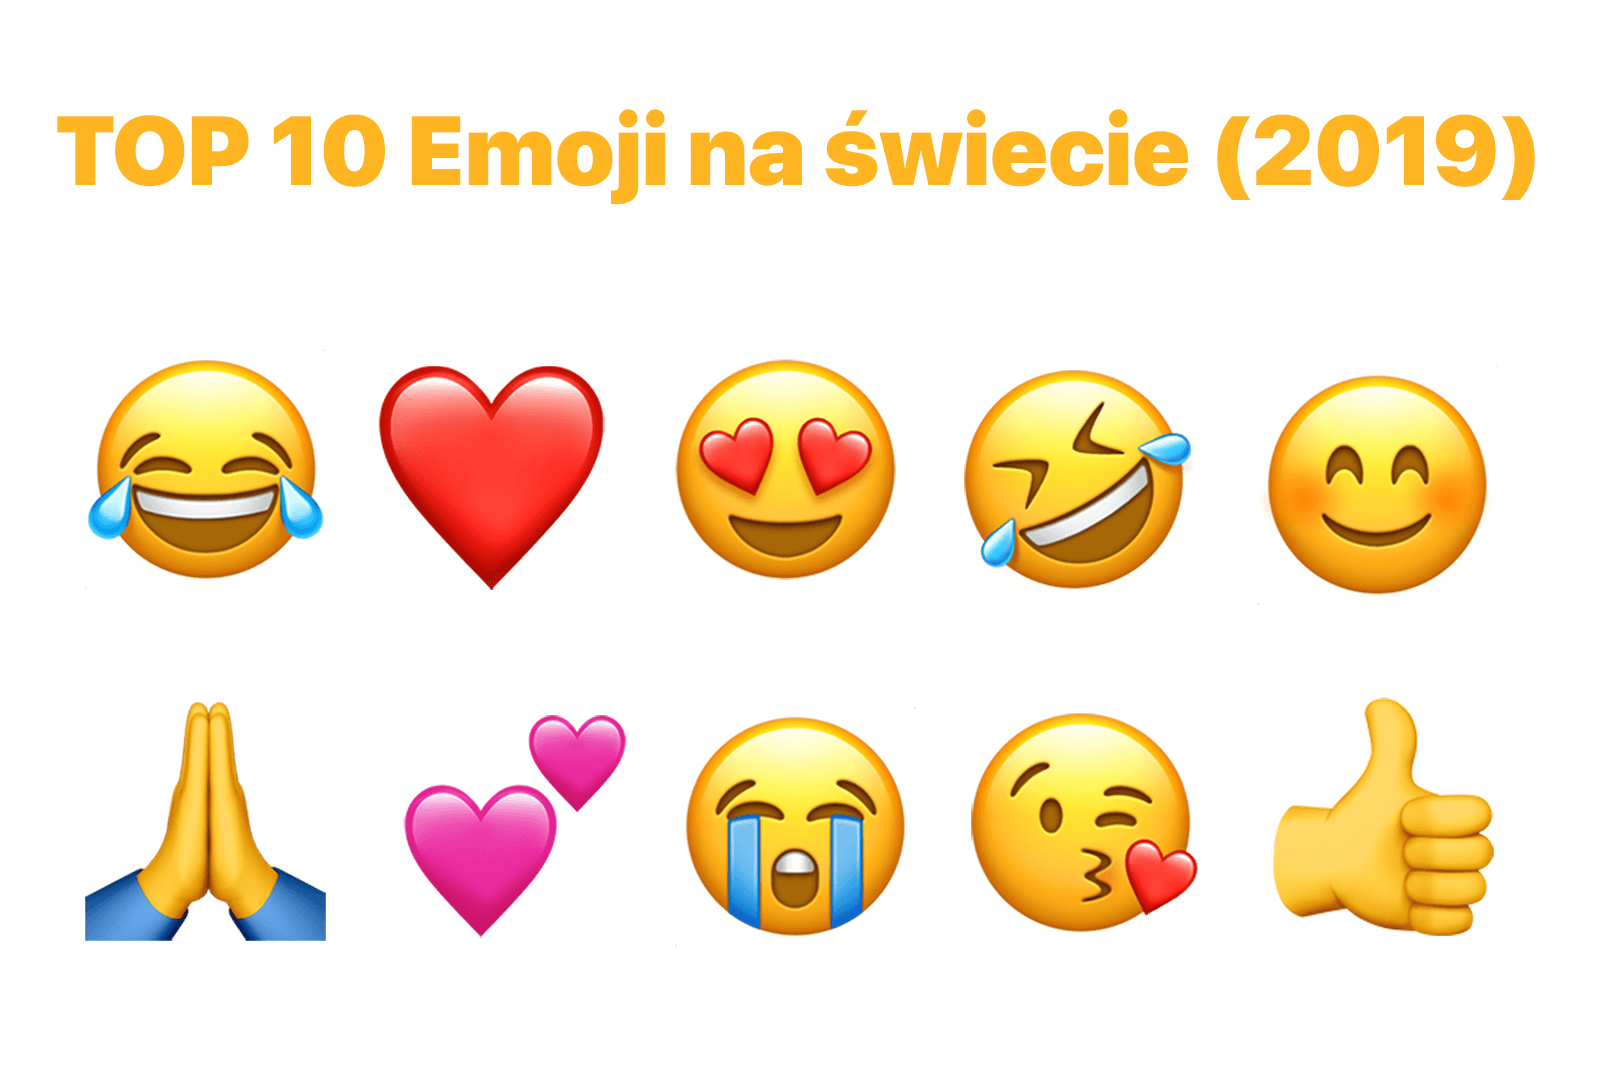 TOP 10 Emoji na świecie (październik 2019)